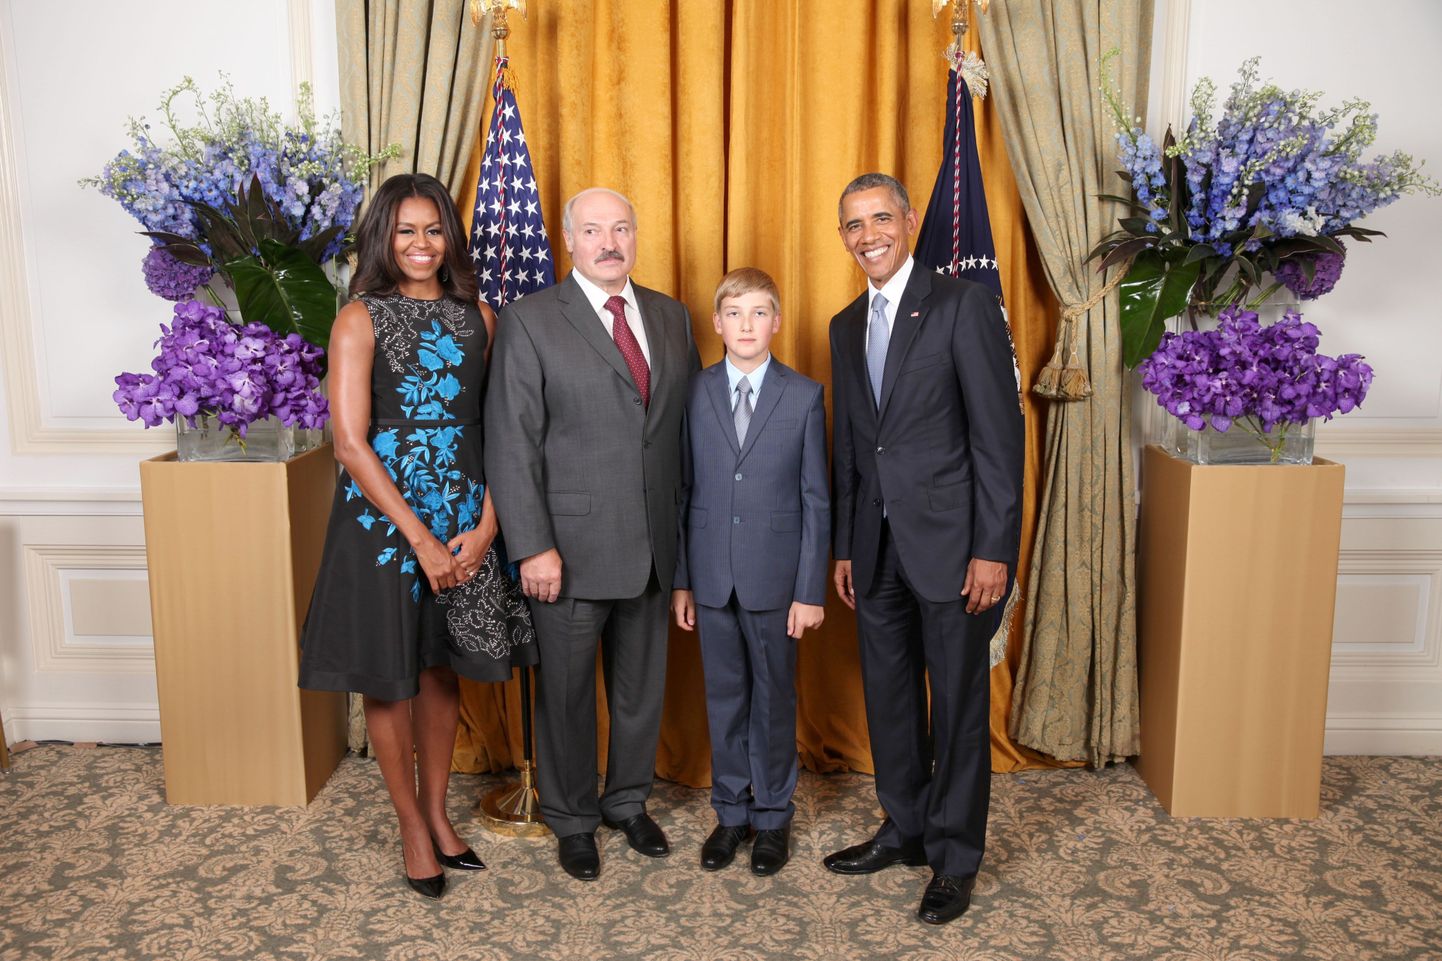 Möödunud nädalal tekitas maailma meedias kõhevust pilt, kus USA presidendipaar Michelle ja Barack Obama poseerivad koos juba 1994. aastast Valgevenet valitseva Aleksandr Lukašenka ja tema arvatavasti n-ö troonipärijaks kasvatava poja Nikolaiga.